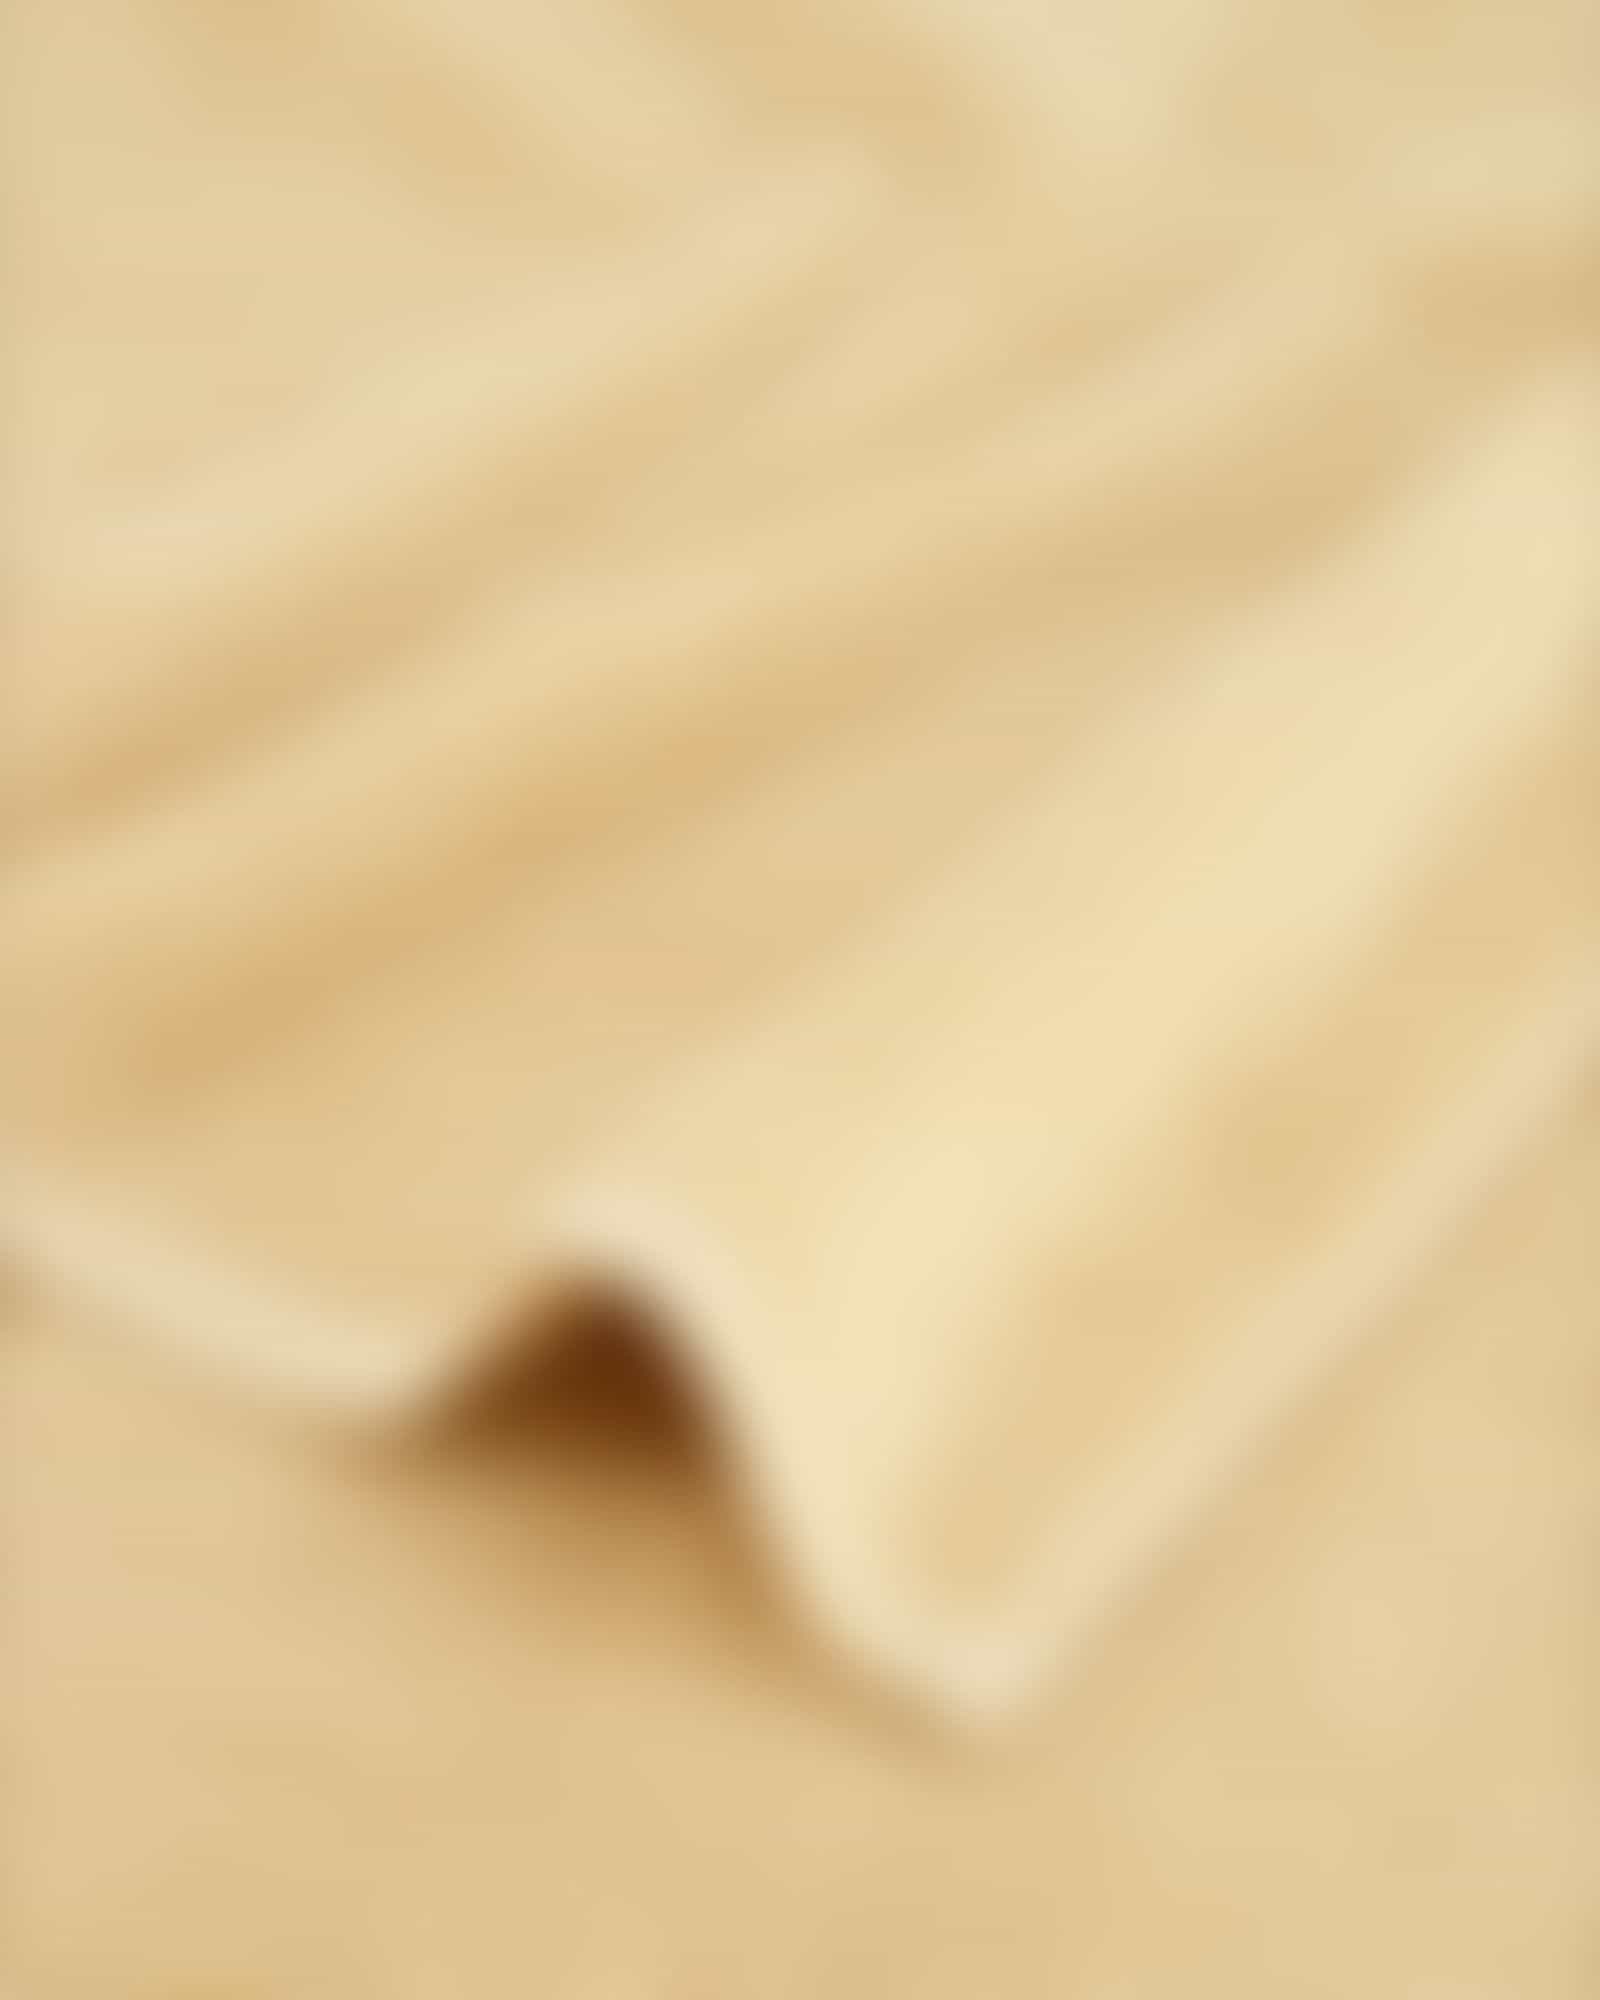 Cawö Handtücher Pure 6500 - Farbe: amber - 514 - Waschhandschuh 16x22 cm